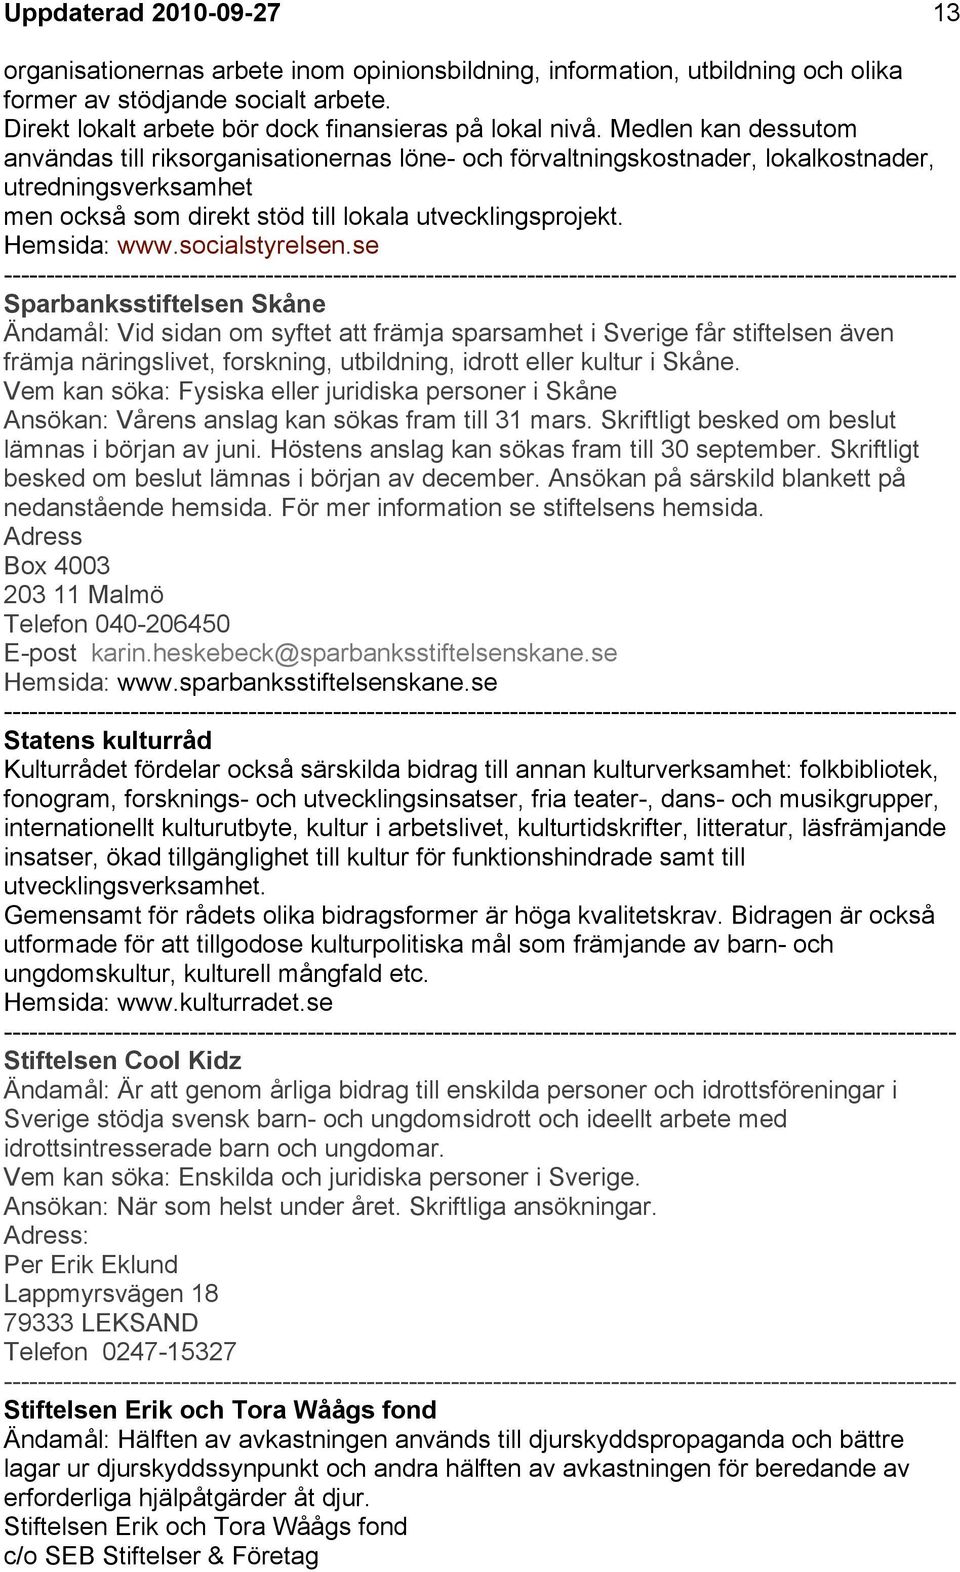 Kompendium med fonder och stiftelser för föreningar i Landskrona ...